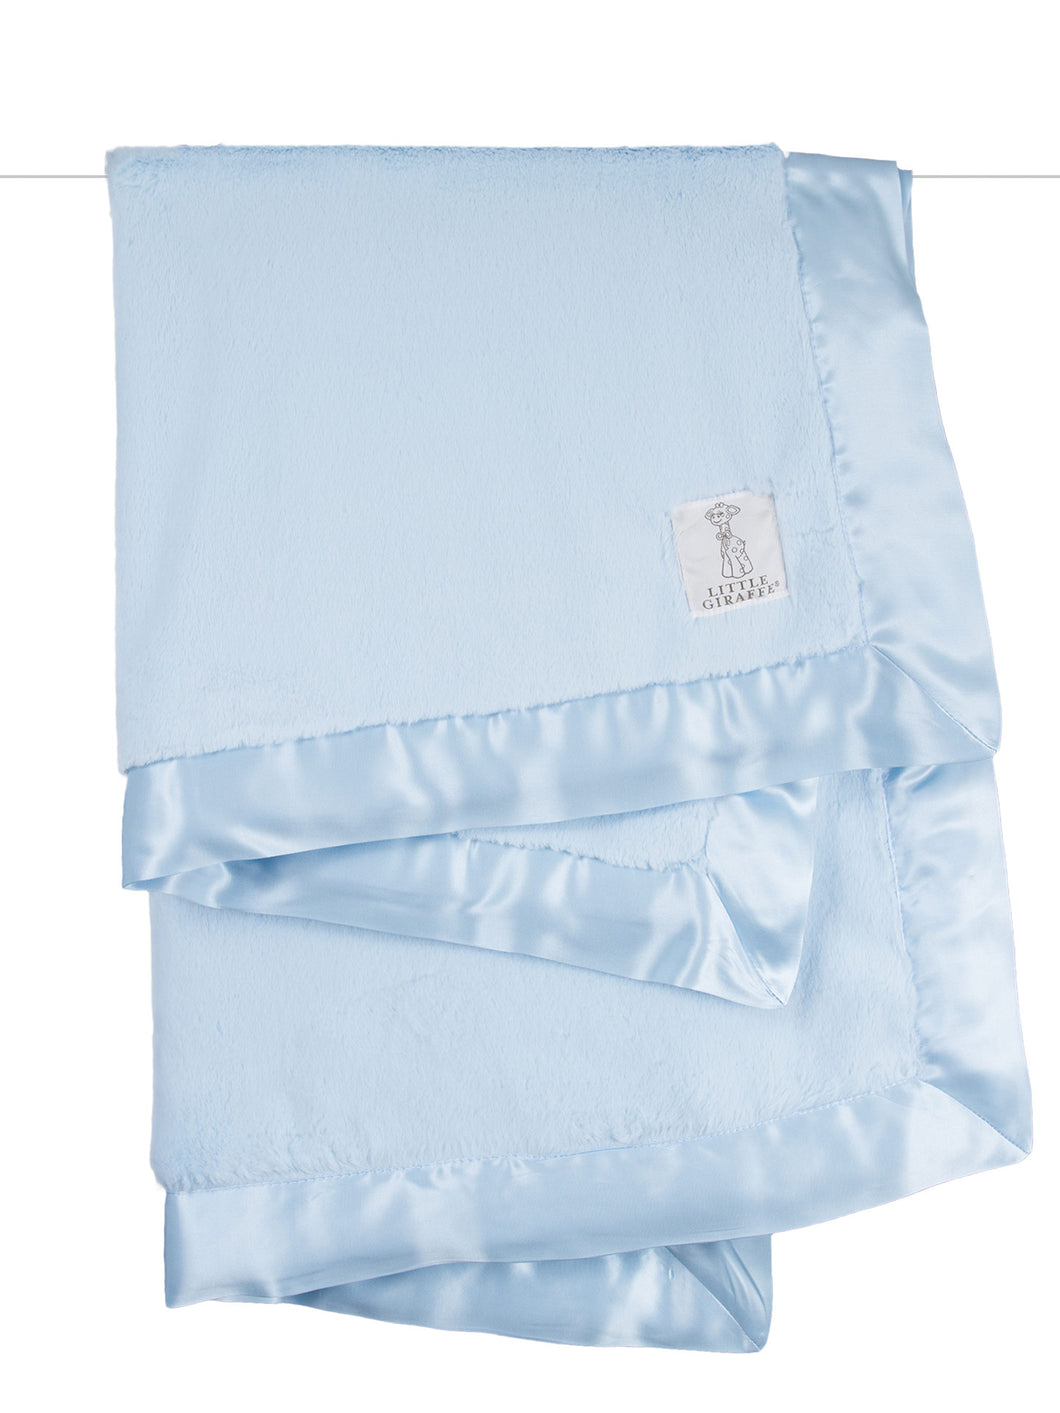 Luxe Blanket - Light Blue